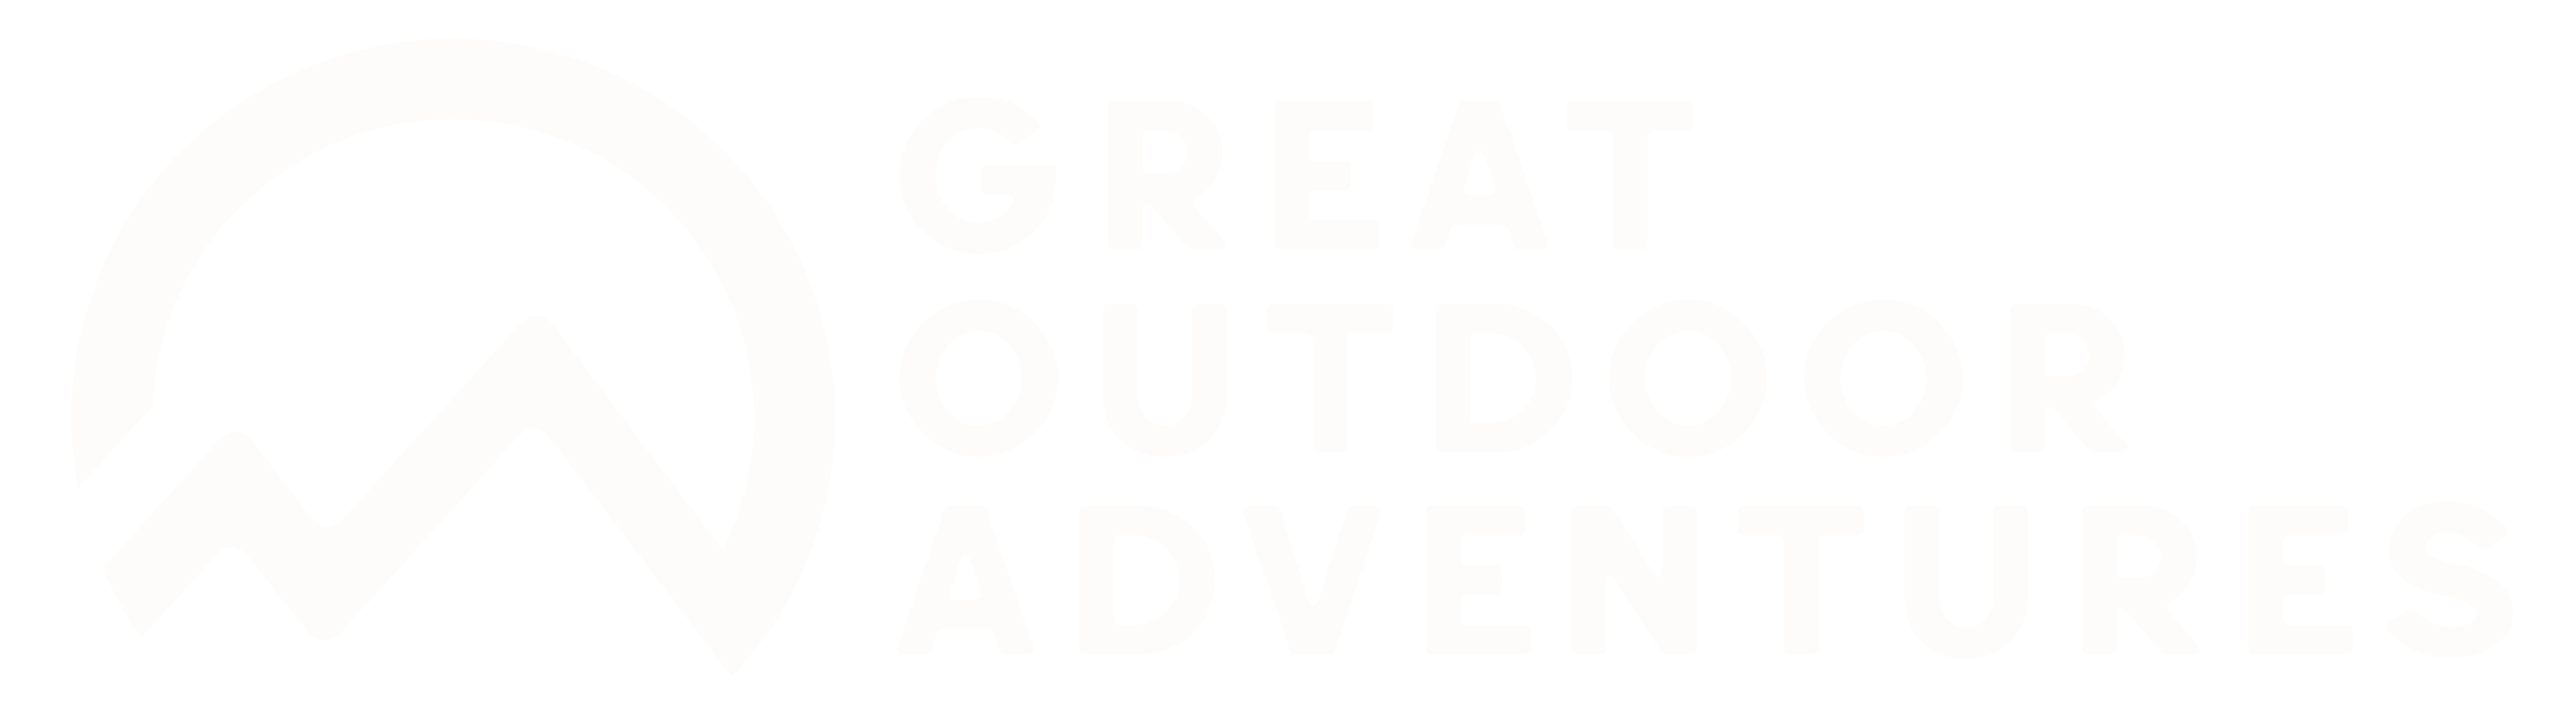 Great outdoor adventures